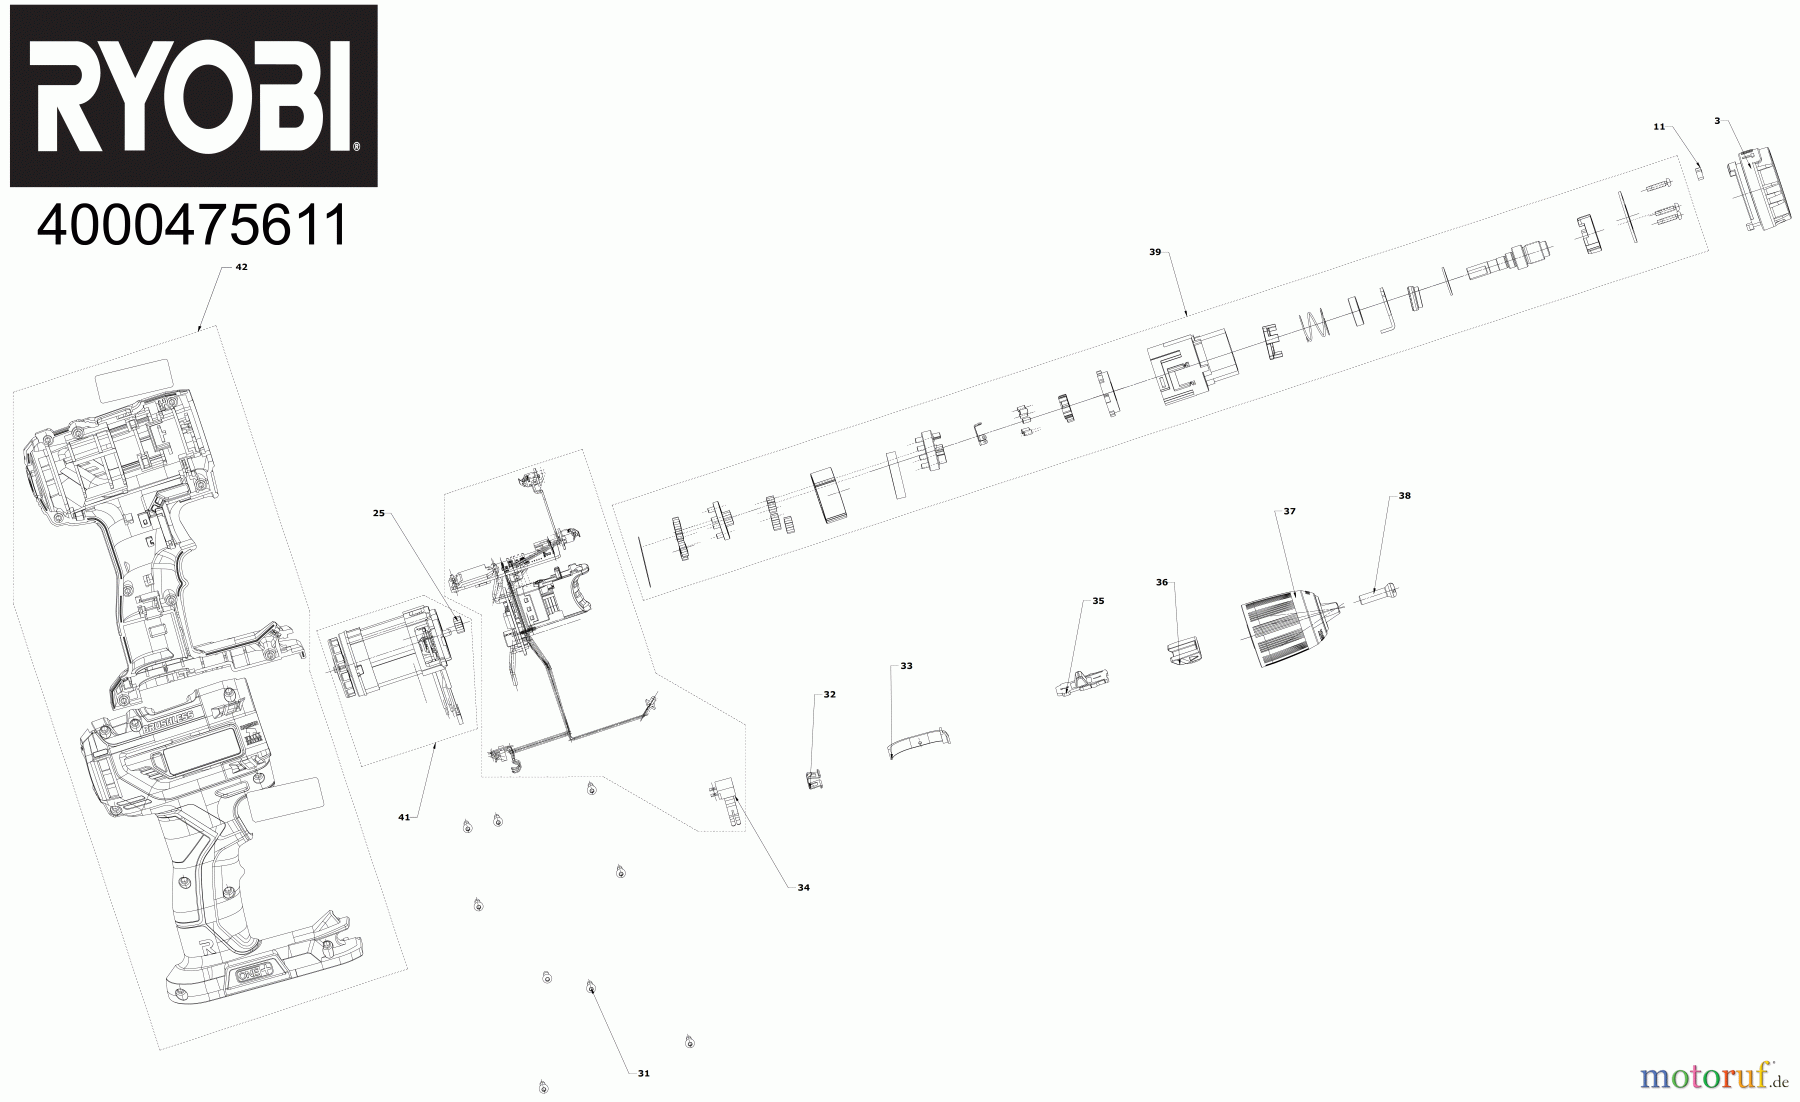  Ryobi (Schlag-)Bohrschrauber Bohrschrauber mit Schlagbohrfunktion R18PD5 Akku-Schlagbohrschrauber Seite 1